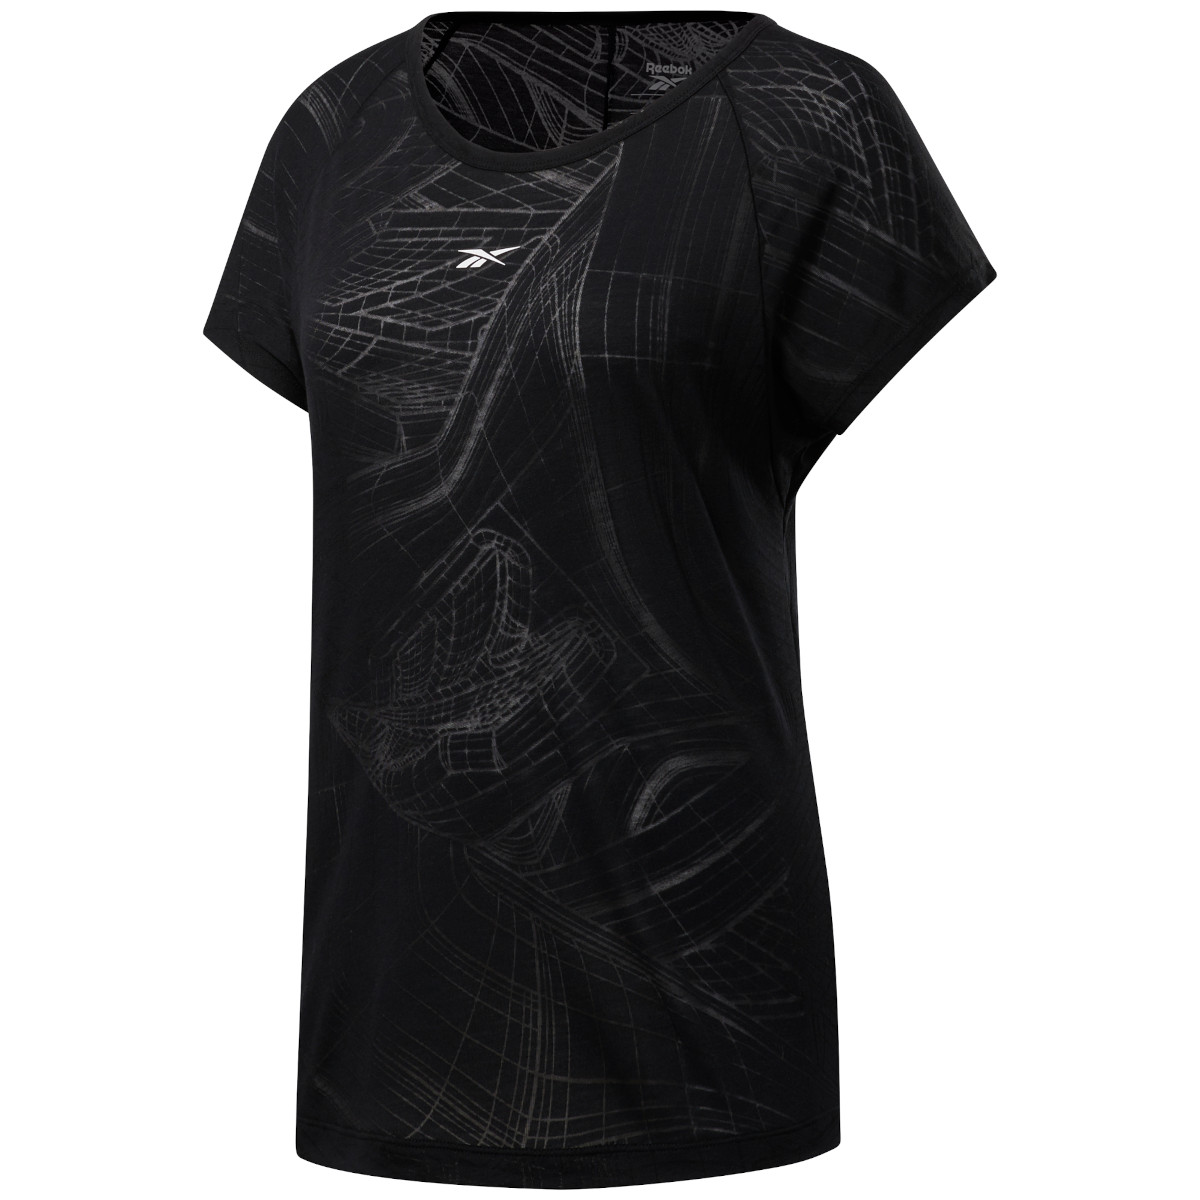 Produktbild von Reebok Frauen Burnout T-Shirt - black FU1926